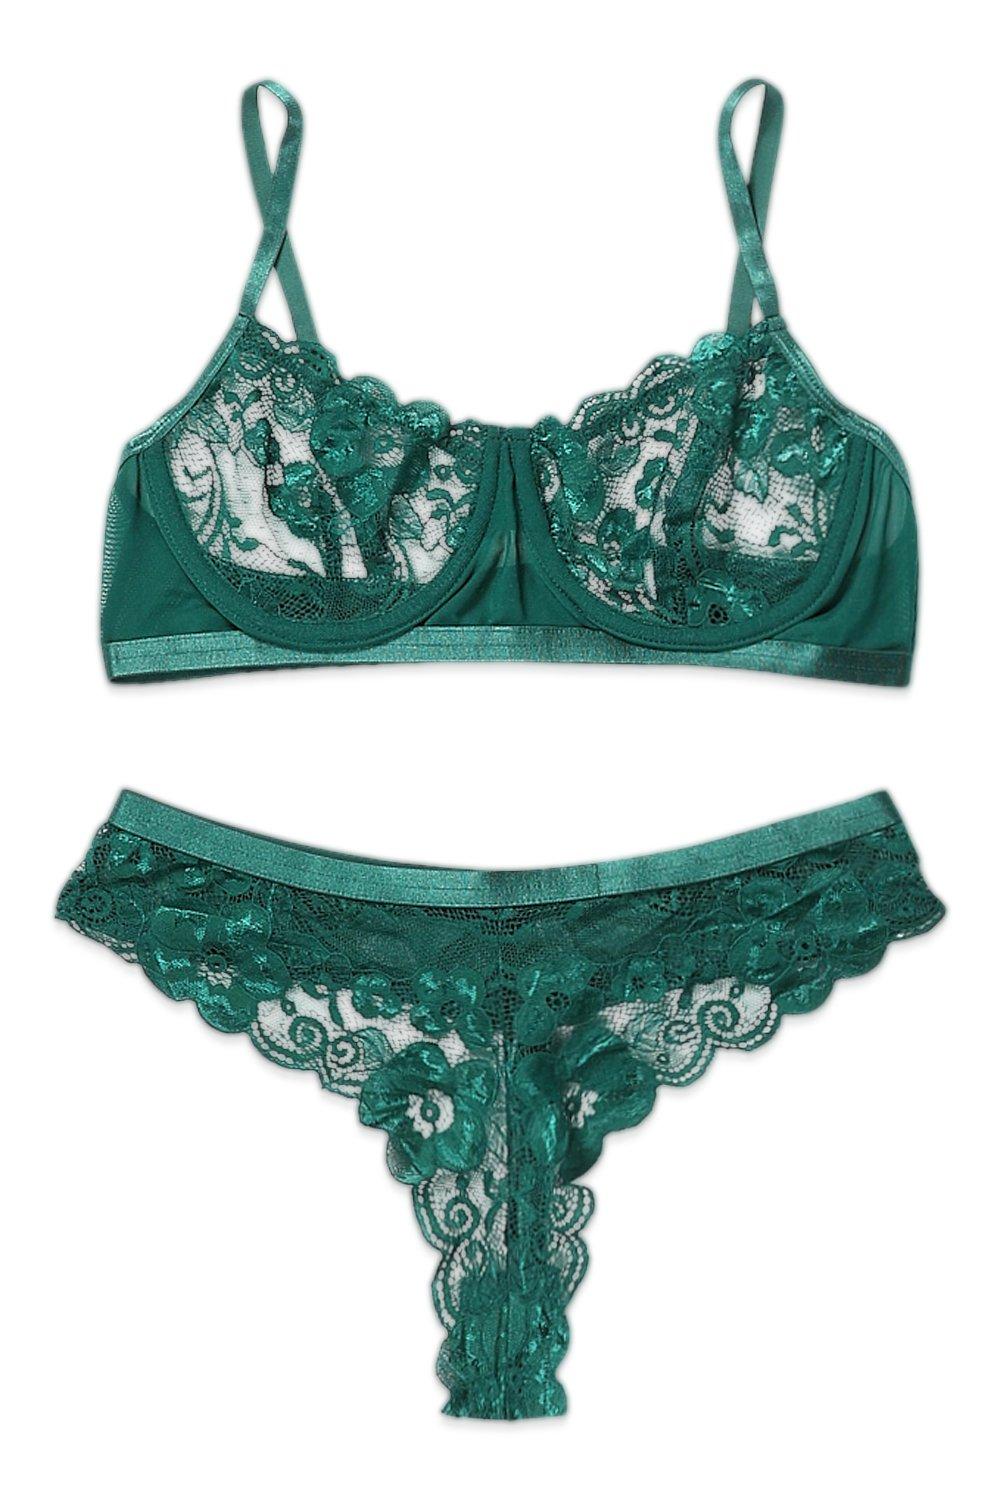 https://media.boohoo.com/i/boohoo/gzz01174_emerald_xl_4/female-emerald-lace-underwire-bra-&-brazilian